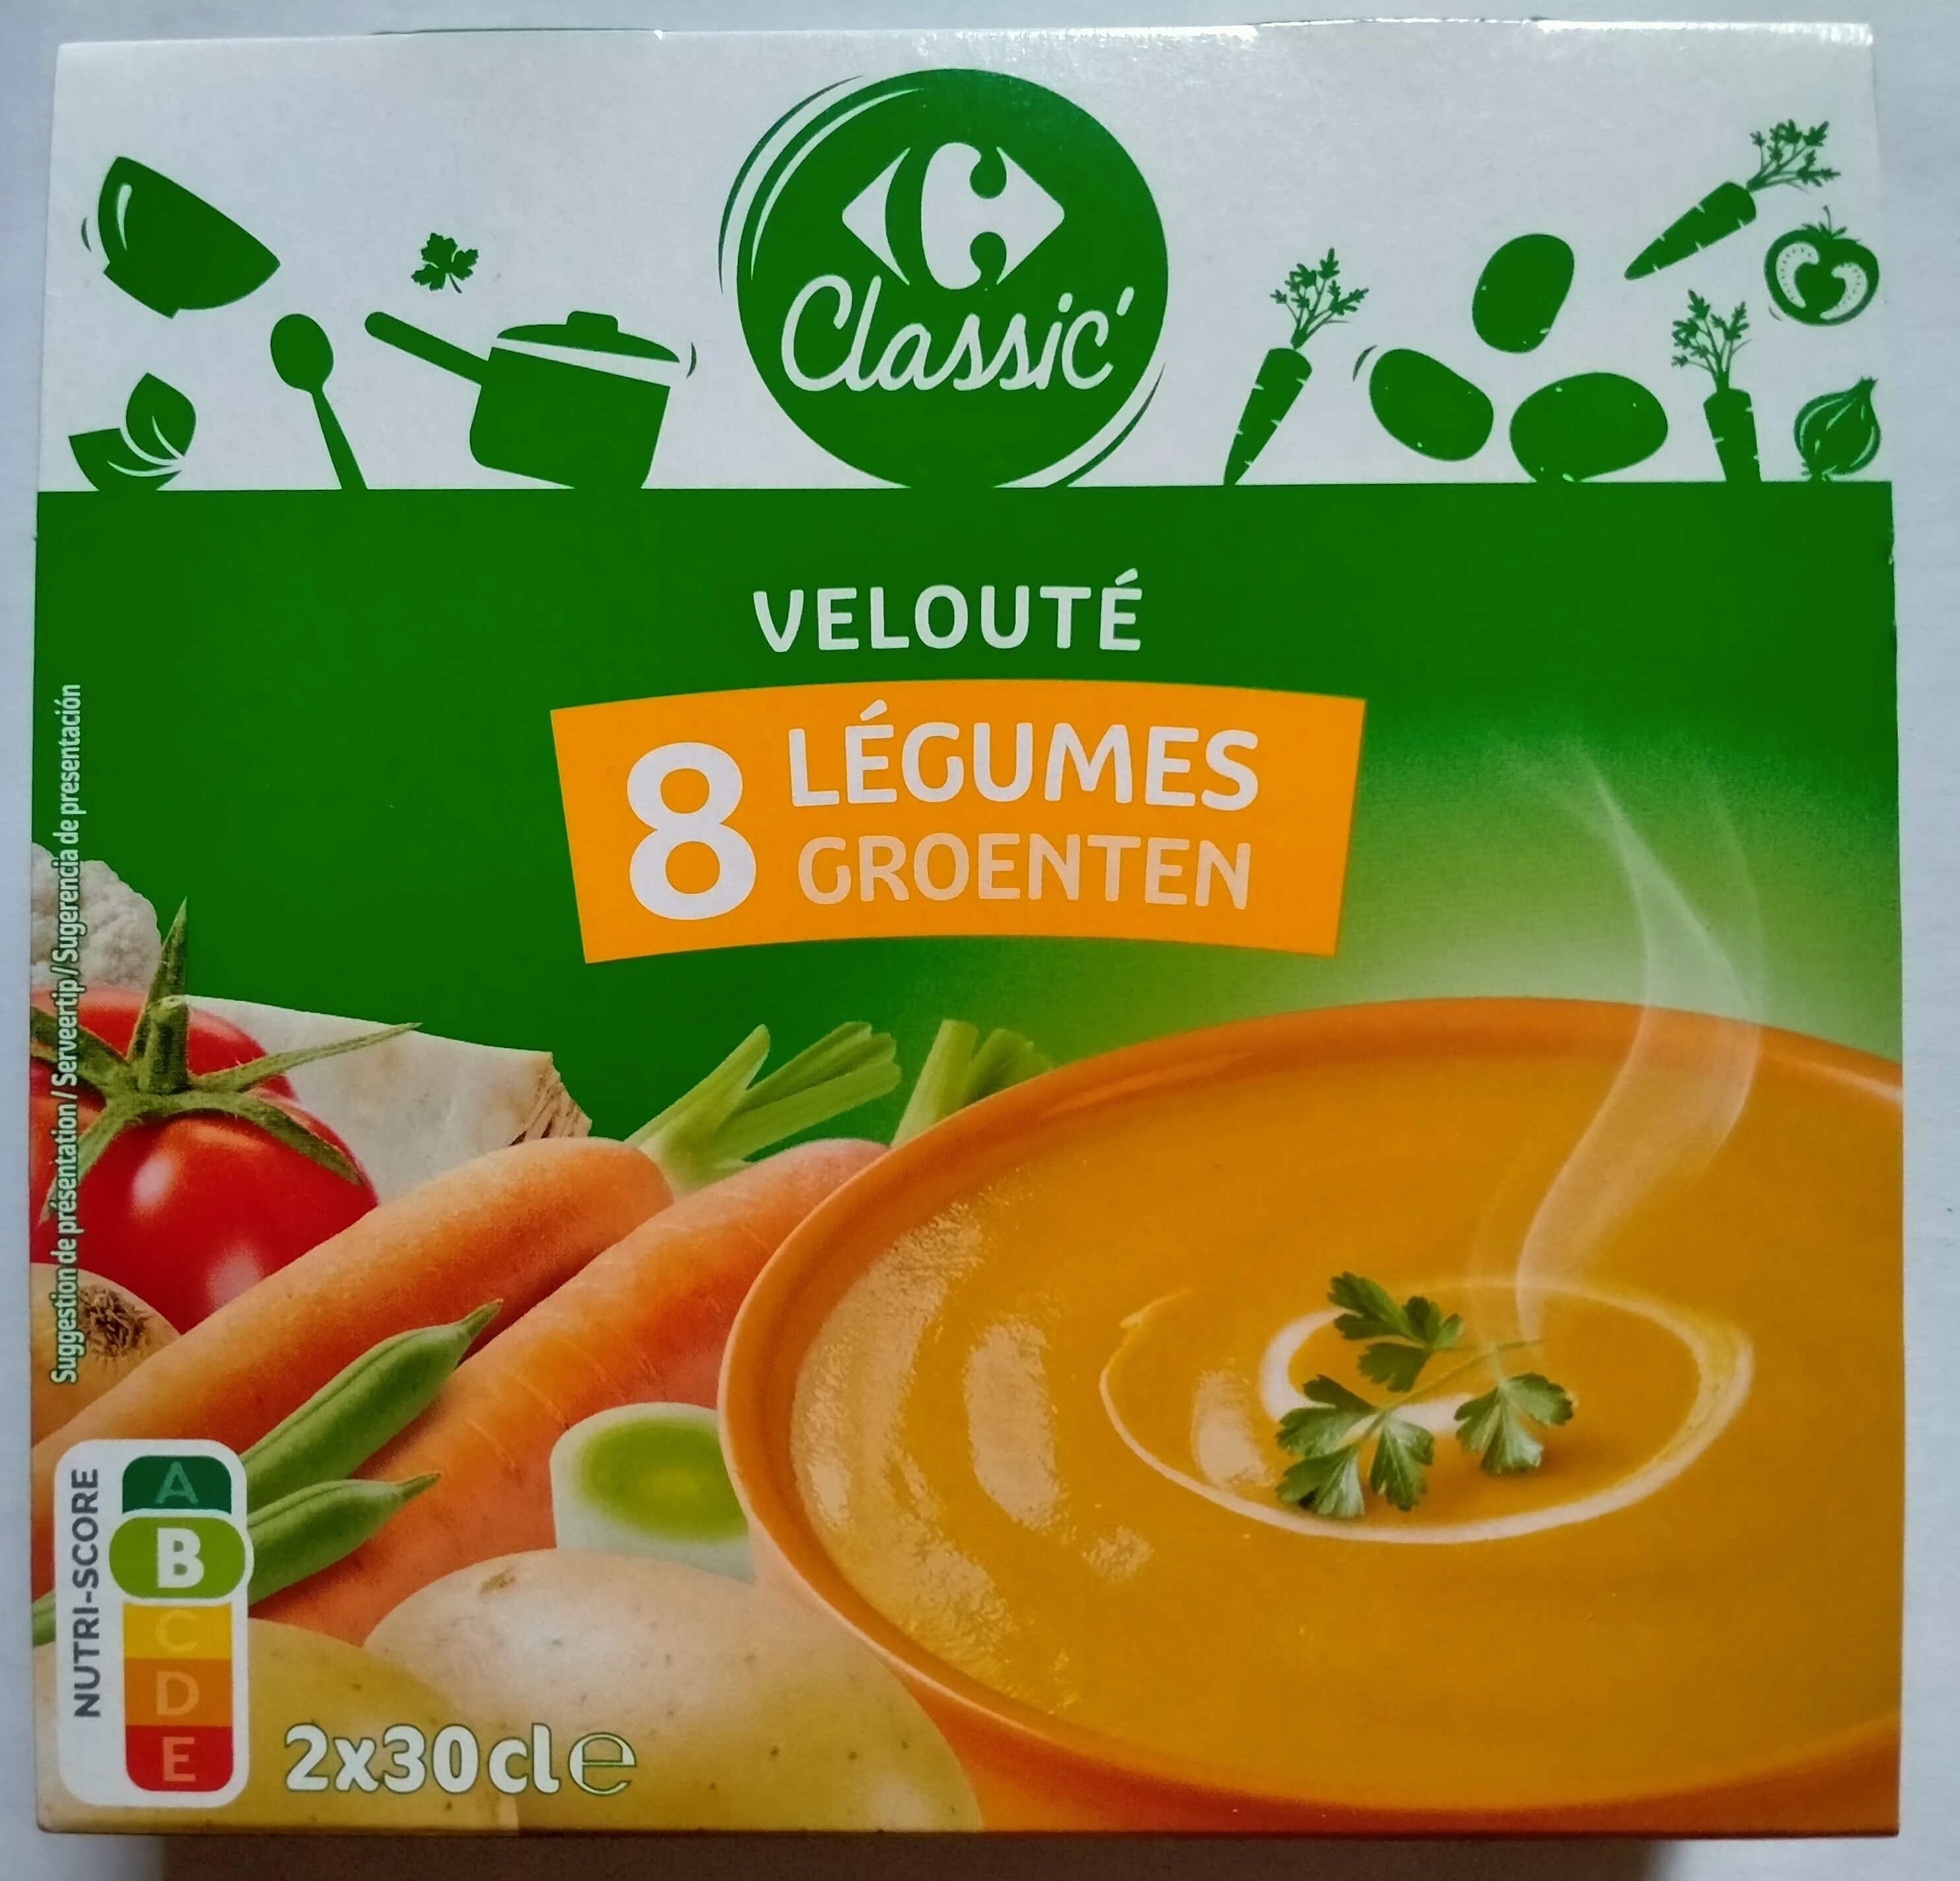 Velouté aux 8 légumes - Producto - fr